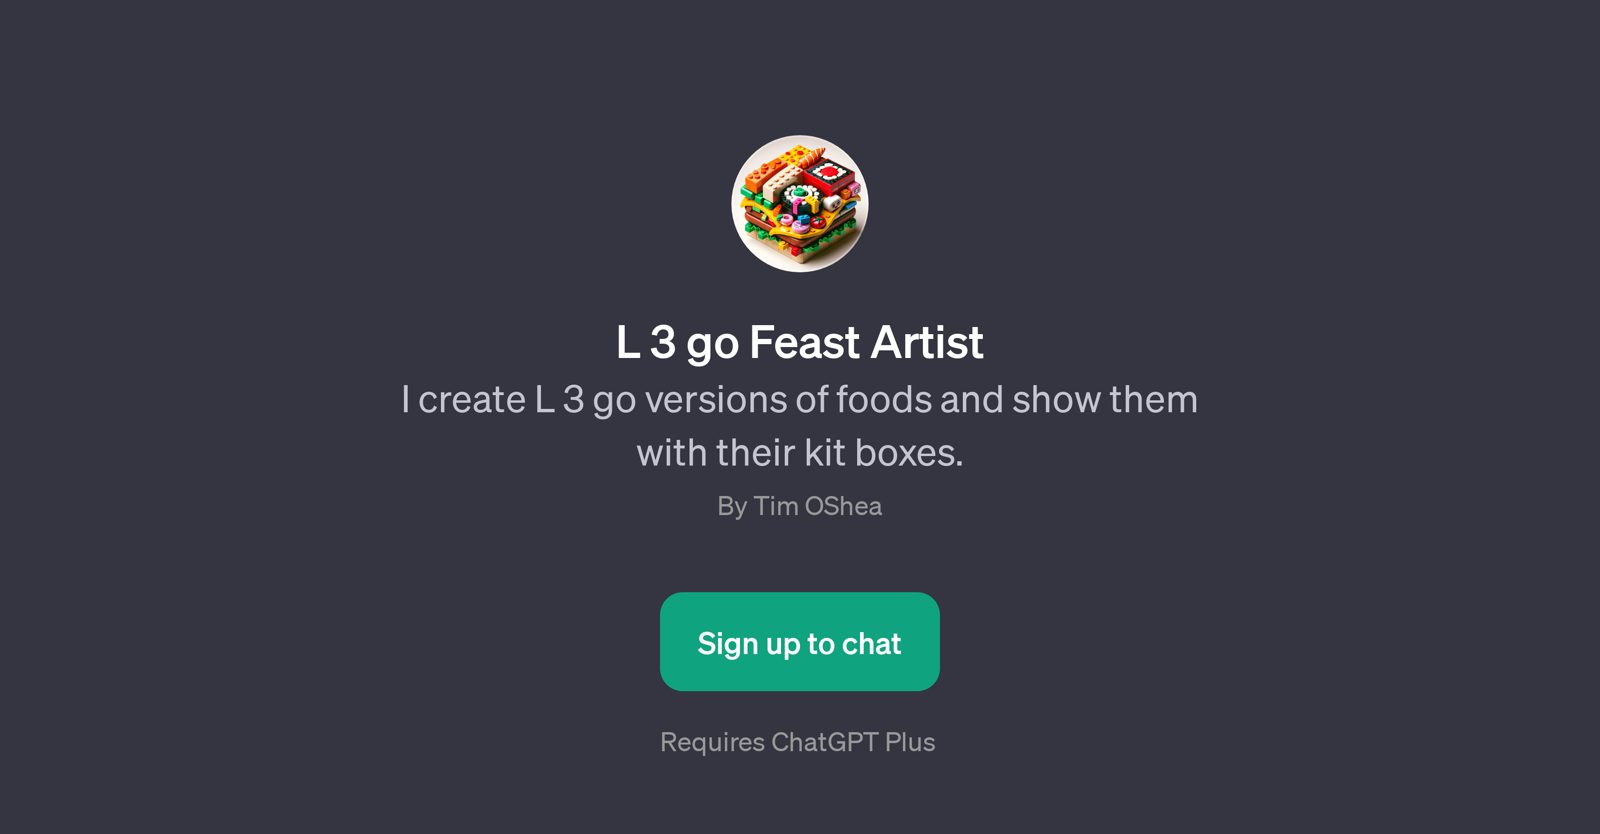 L 3 go Feast Artist website